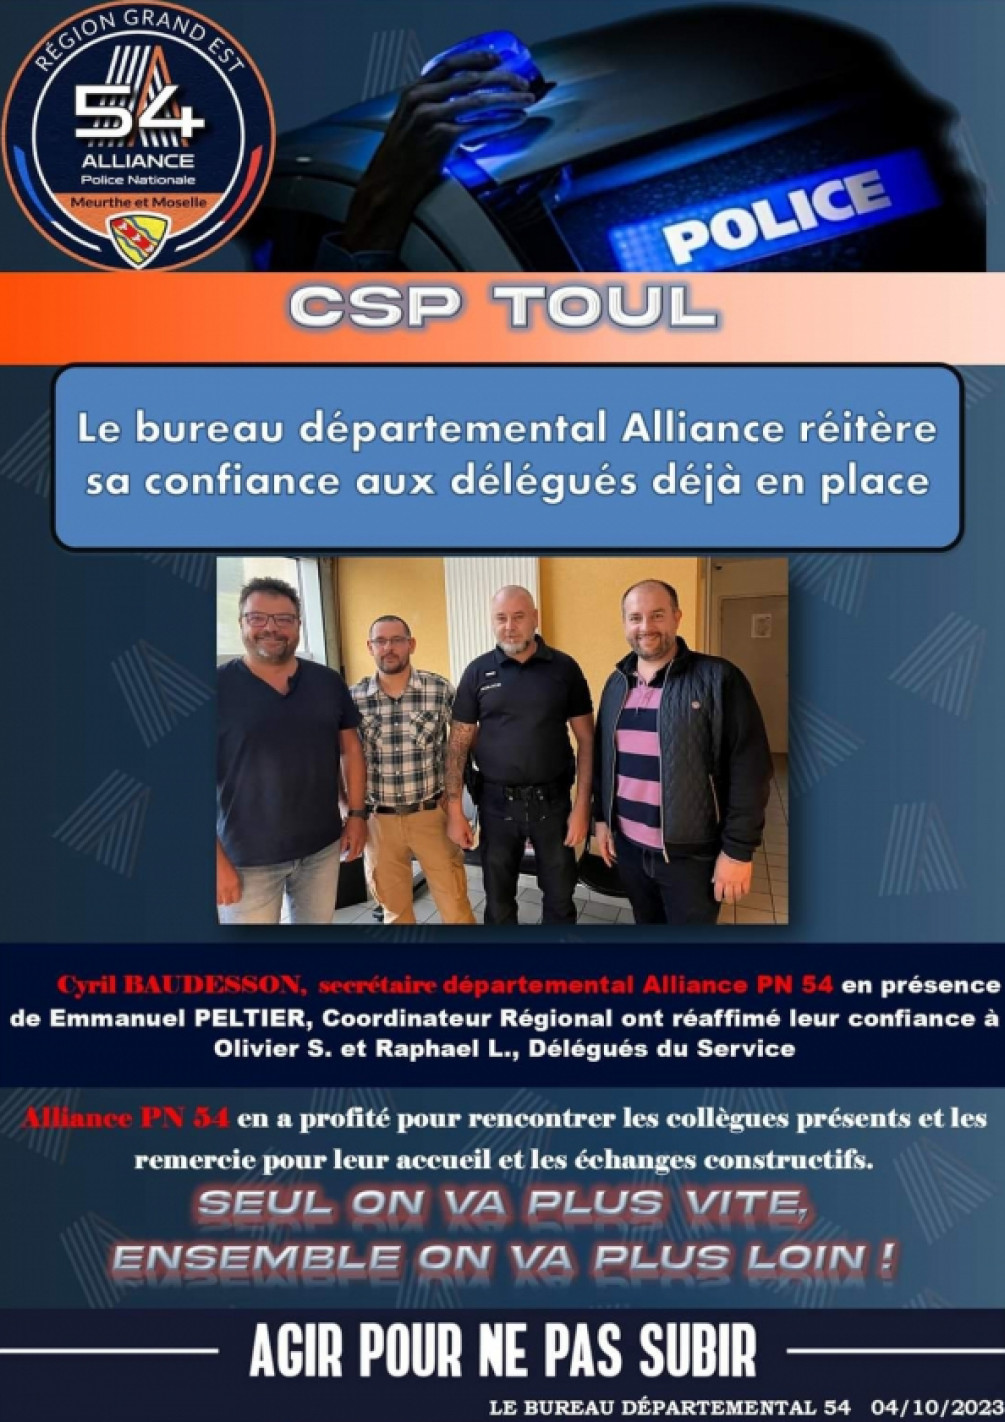 Csp TOUL Alliance Police Nationale réitère sa confiance en son équipe